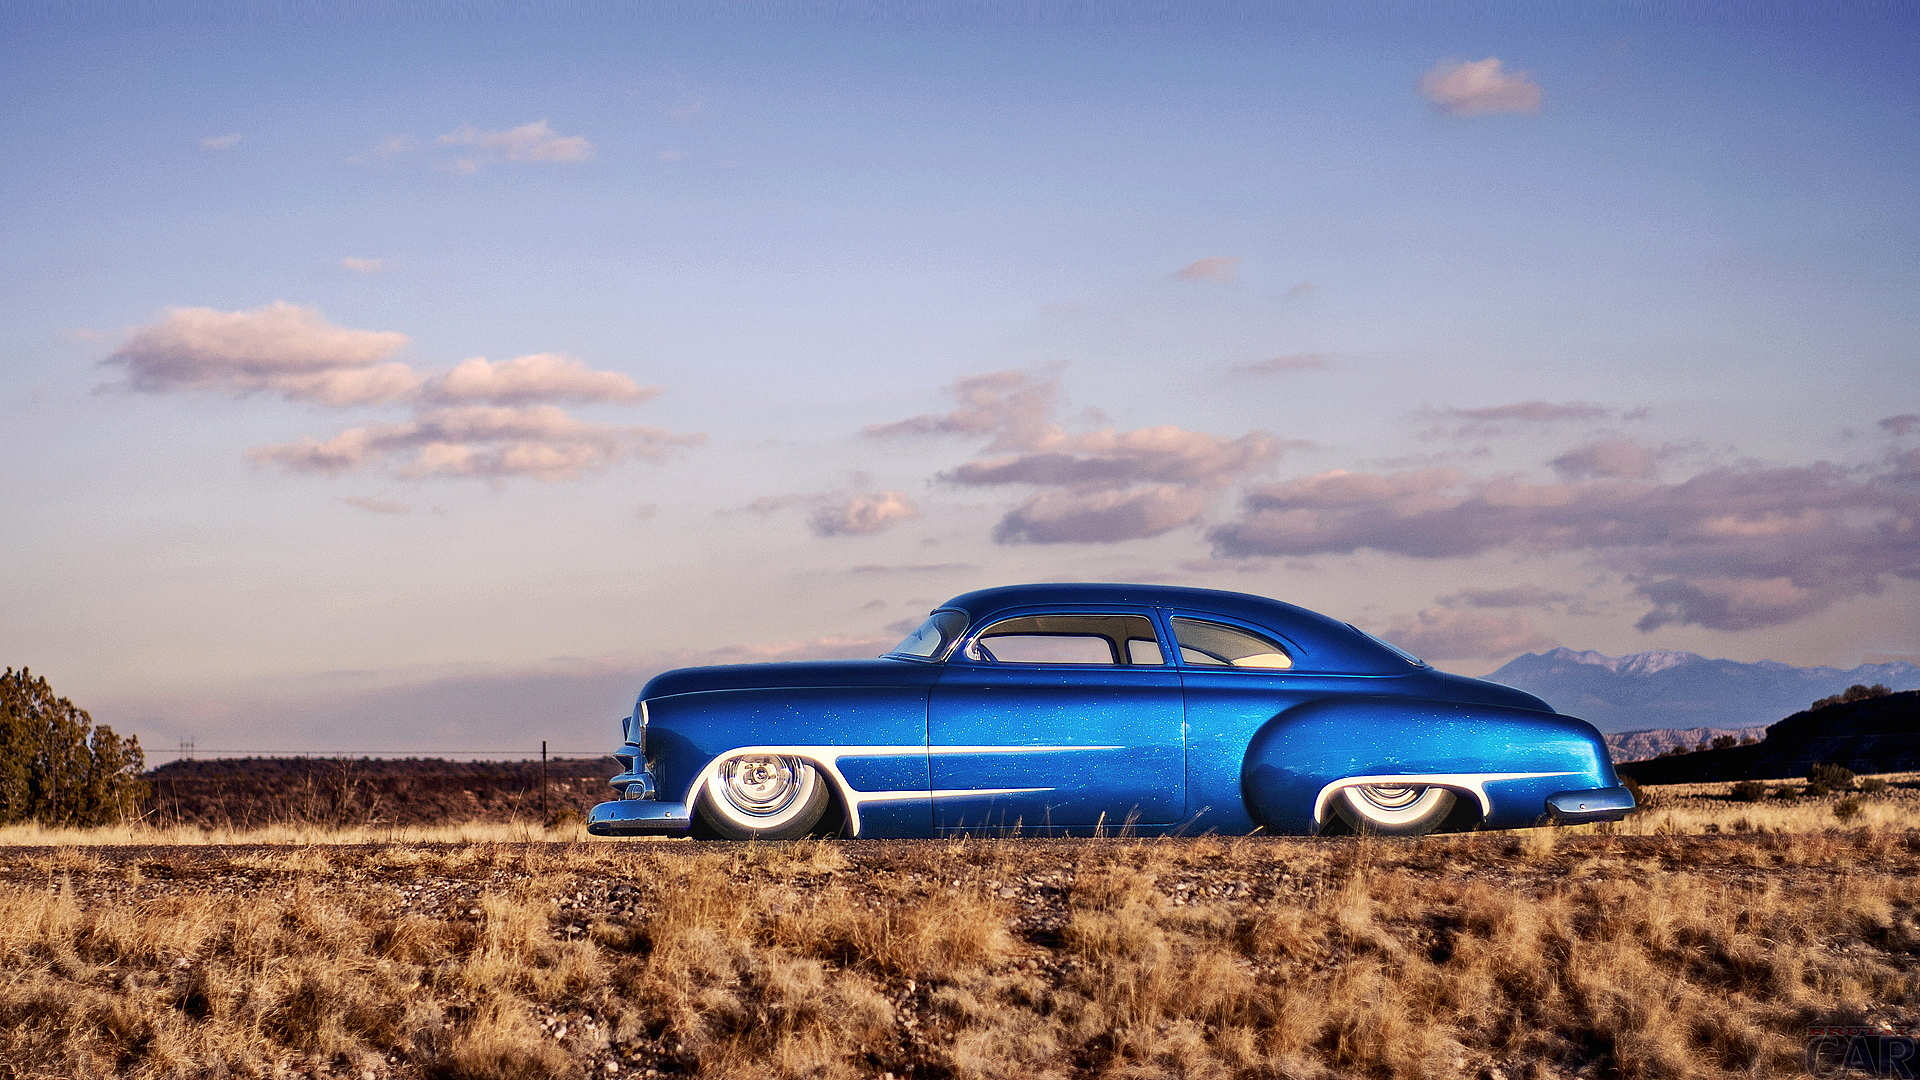 Download - Desert Car Blue Sky , HD Wallpaper & Backgrounds